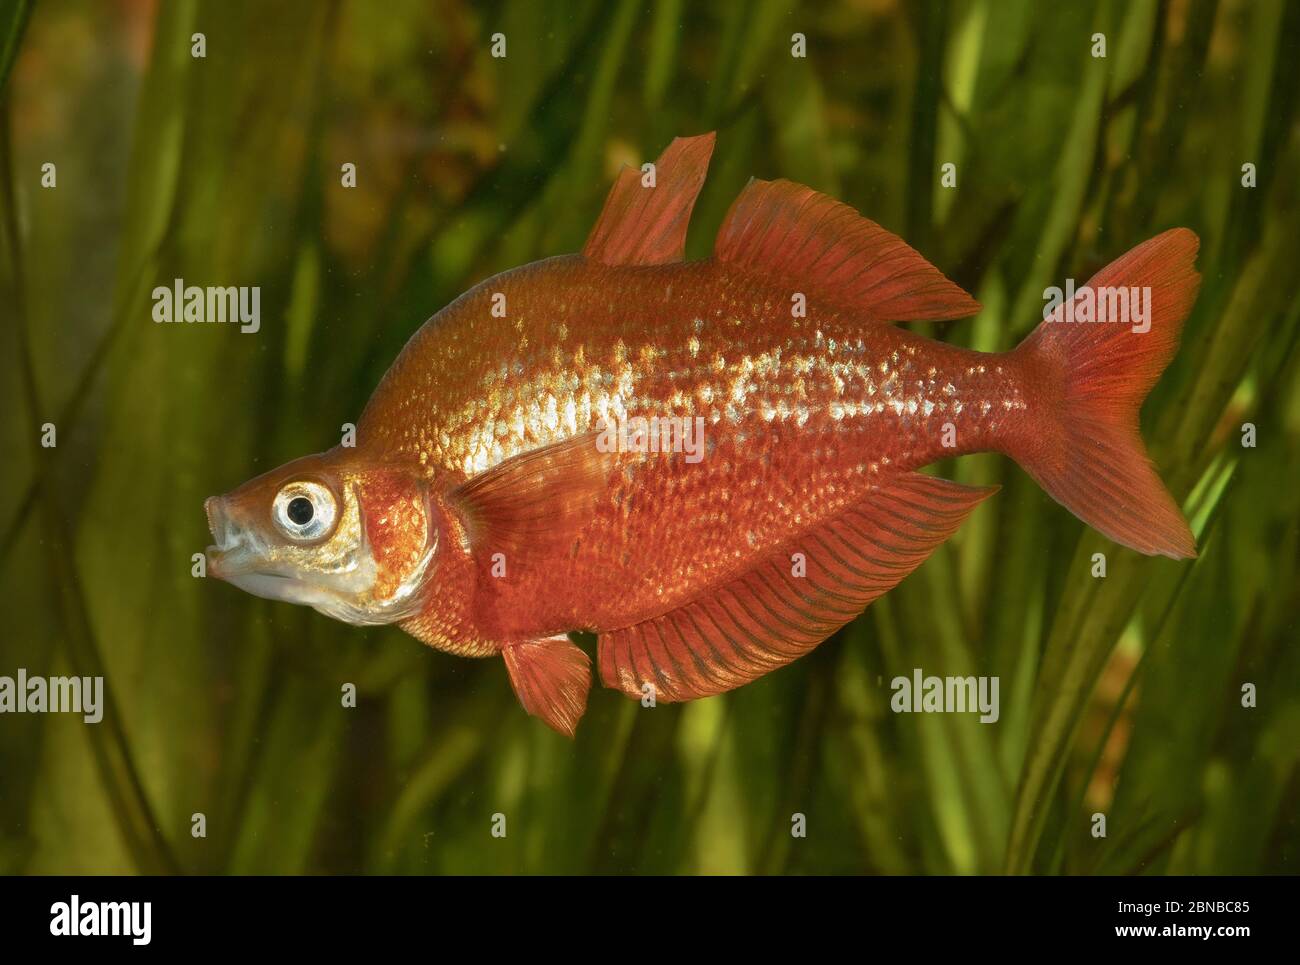 Red rainbowfish, Salmon-red rainbowfish, New Guinea Red Irian Rainbowfish (Glossolepis incisus), impressing behaviour, nuptial colouration Stock Photo